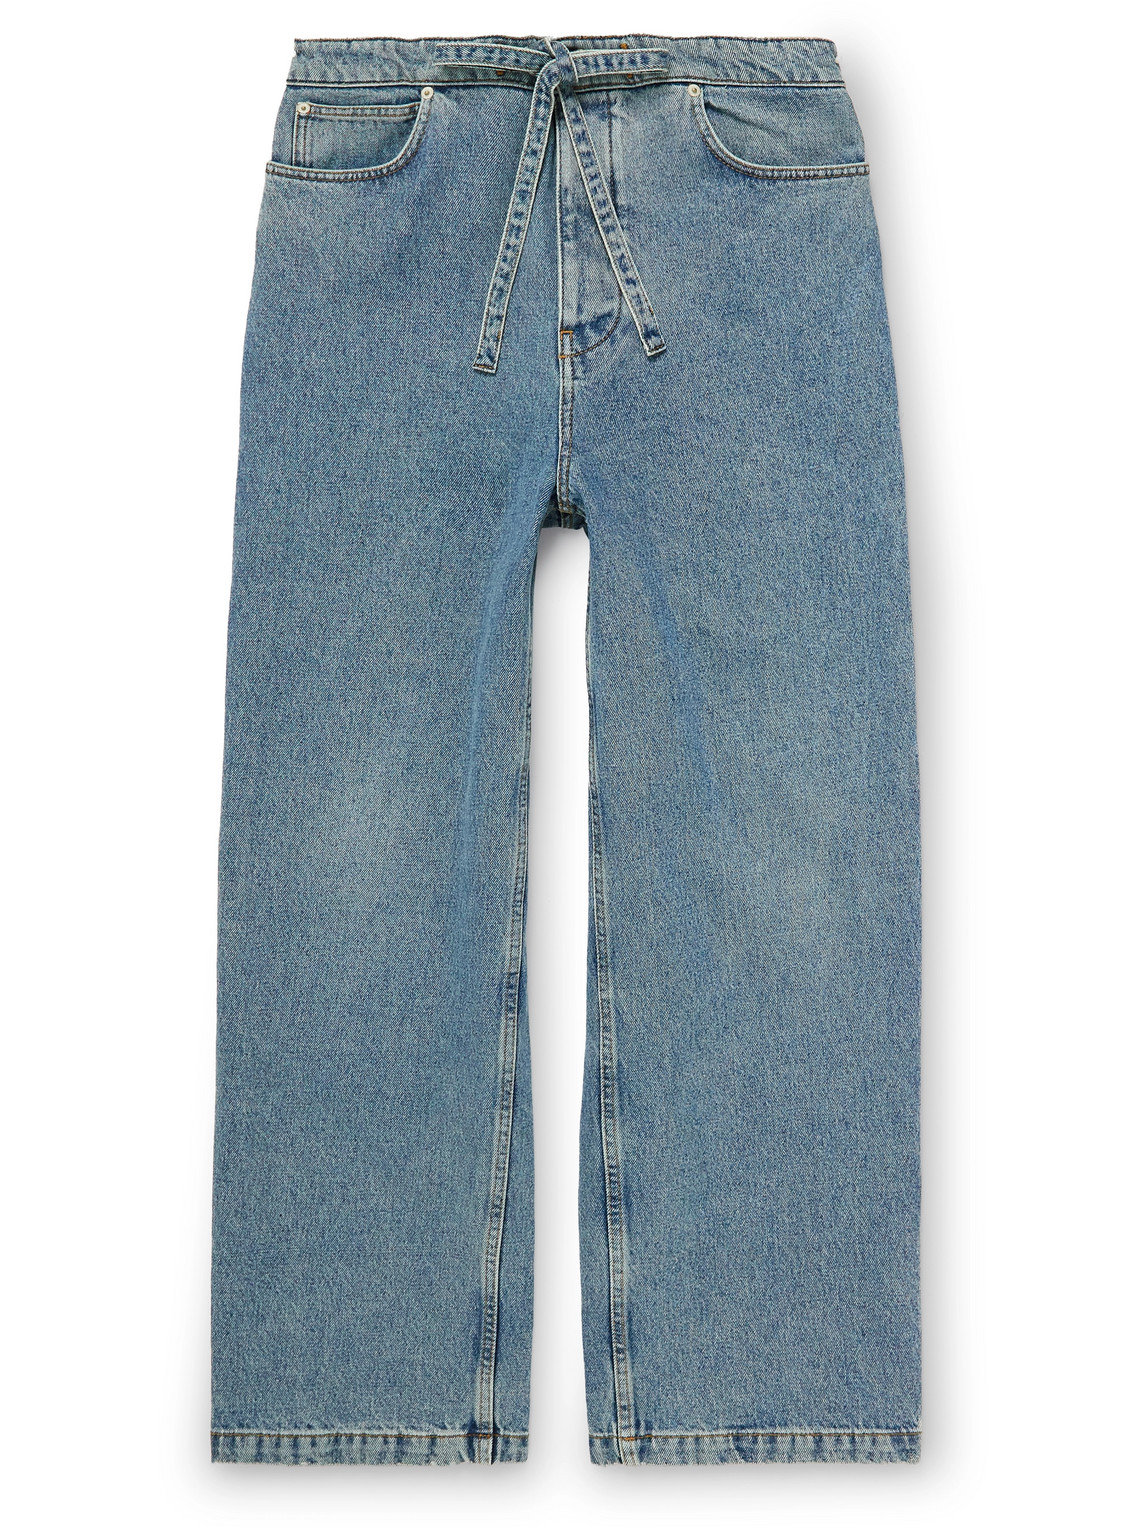 LOEWE Jeans for Men | ModeSens